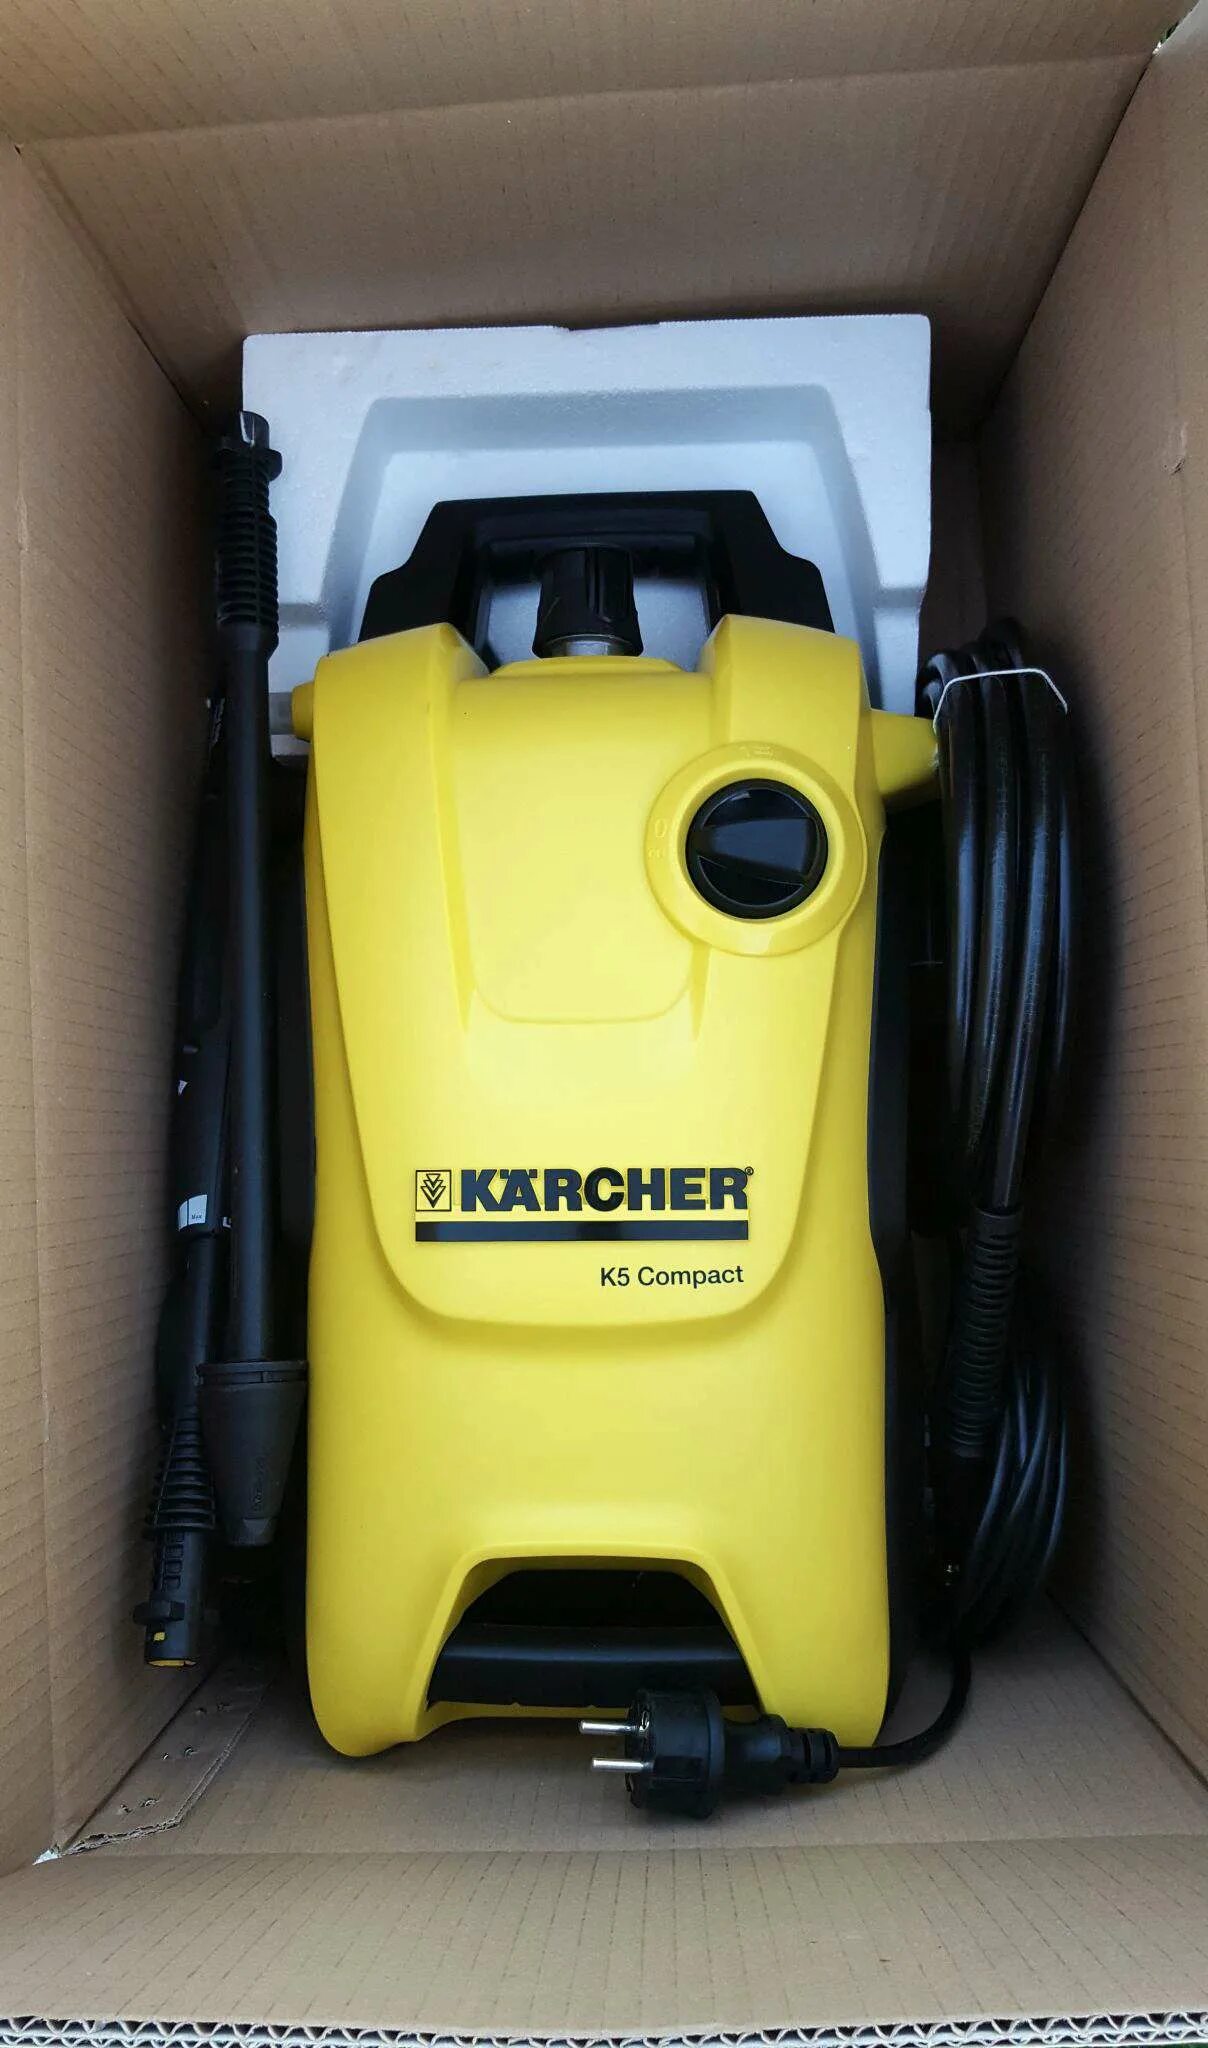 Мойка Karcher k 5 Compact. Минимойка Karcher к5 Compact. Мойка высокого давления Karcher к 5. 1.630-720.0 Karcher k 5 Compact.